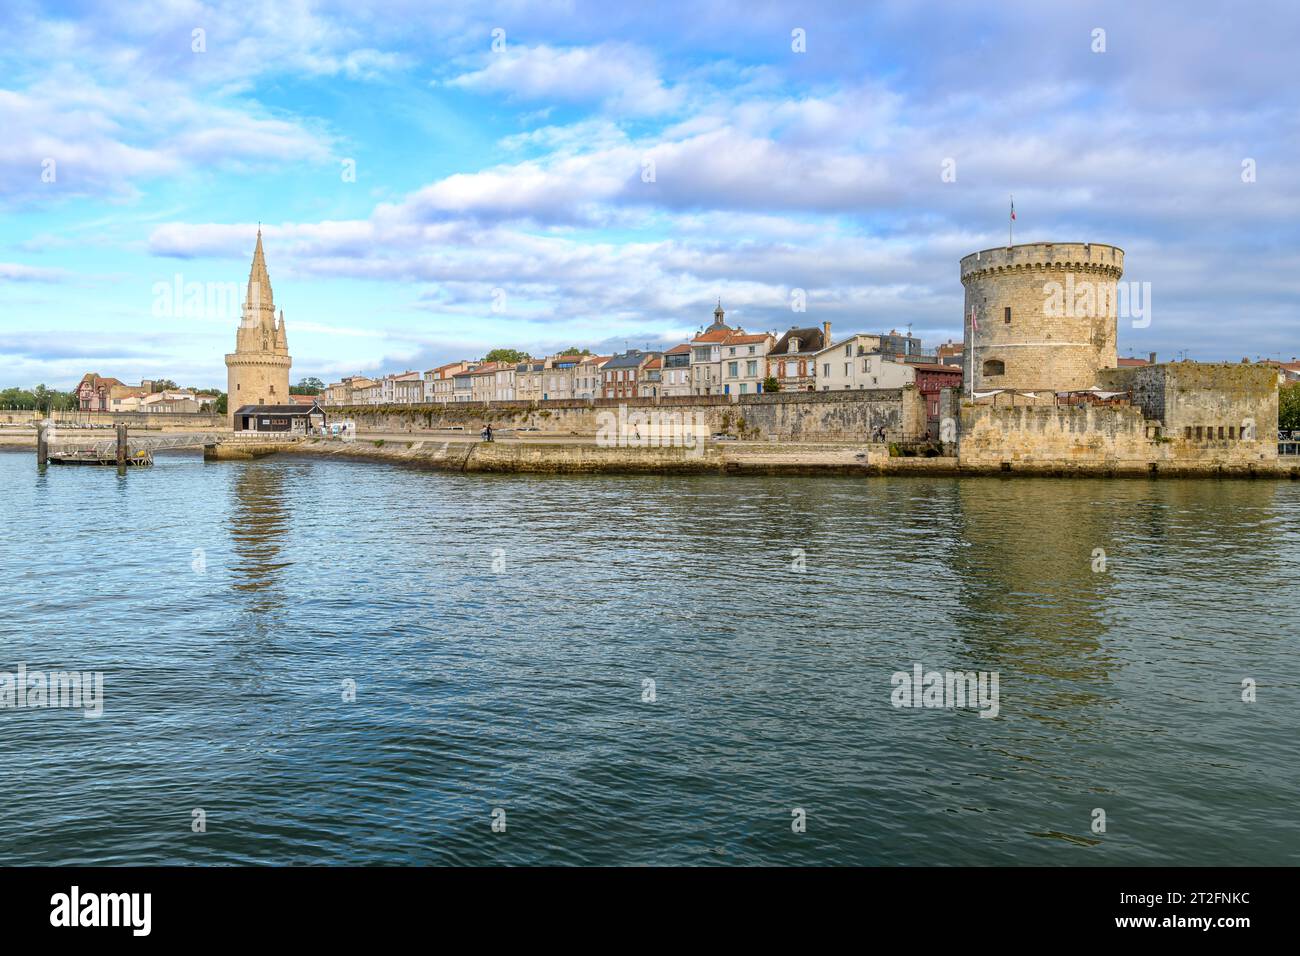 Il porto vecchio nella splendida cittadina di mare di la Rochelle, sulla costa occidentale della Francia. Un'attrazione turistica con yacht e barche da pesca. Foto Stock